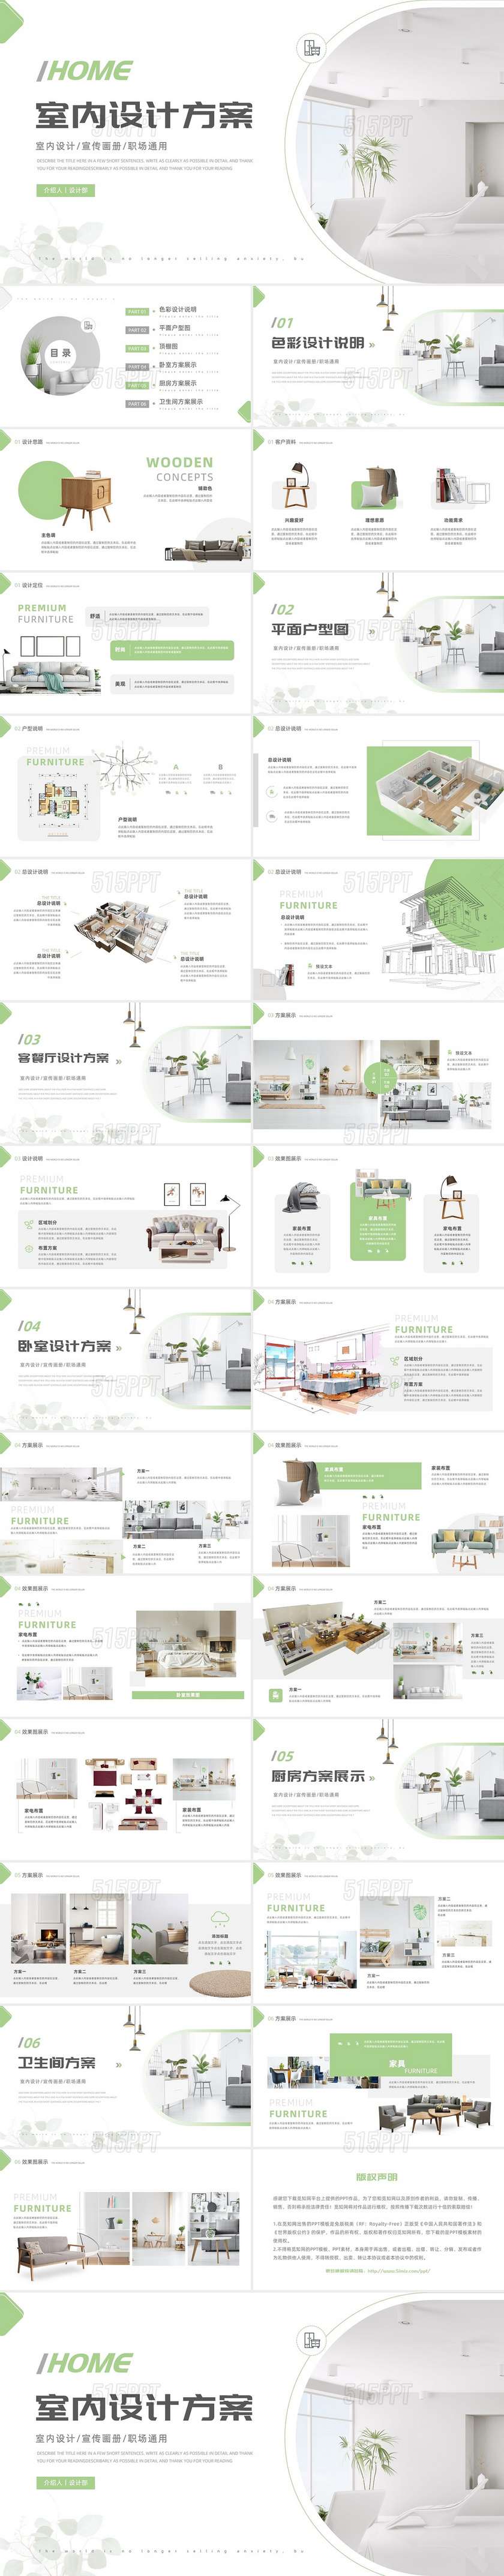 绿色小清新简约室内设计方案ppt模板